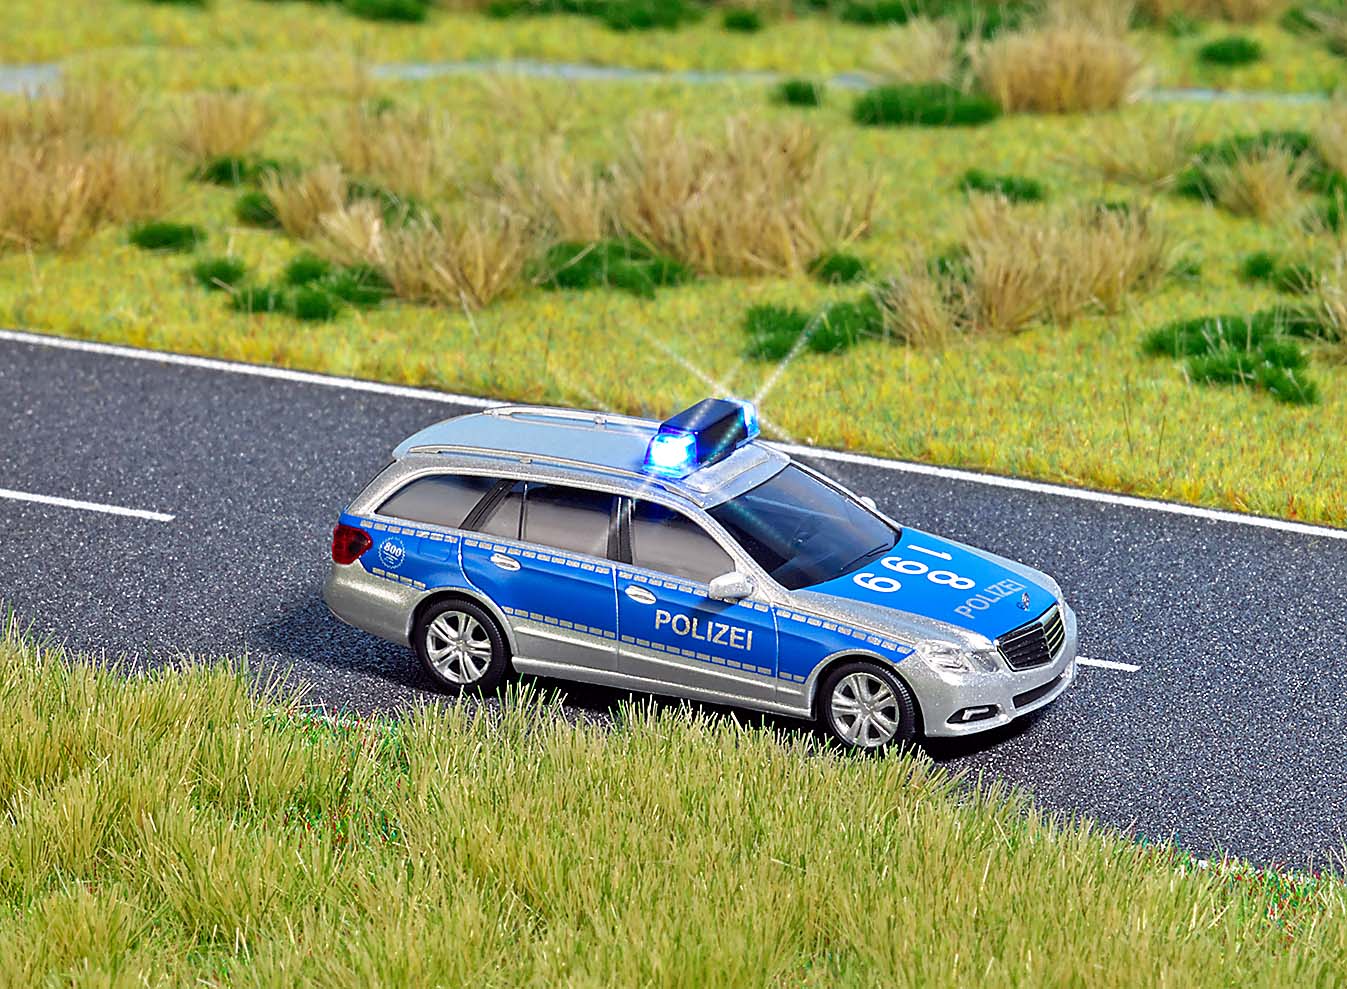 Mercedes Polizei H0 - 5626